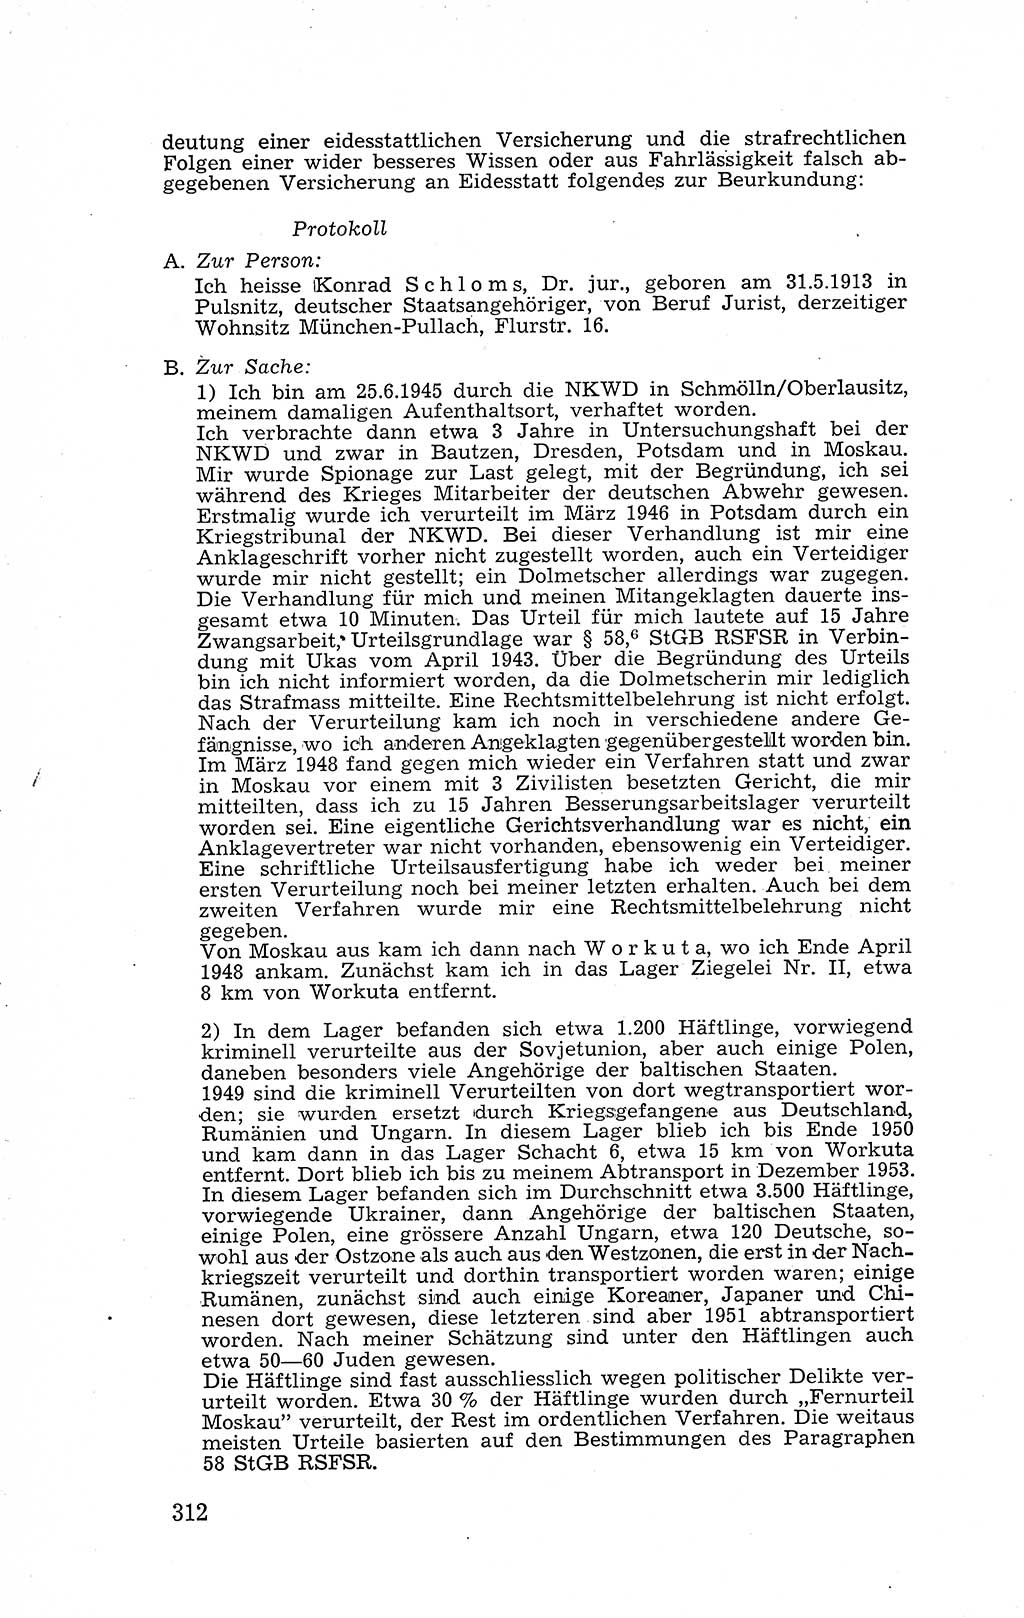 Recht in Fesseln, Dokumente, Internationale Juristen-Kommission [Bundesrepublik Deutschland (BRD)] 1955, Seite 312 (R. Dok. IJK BRD 1955, S. 312)